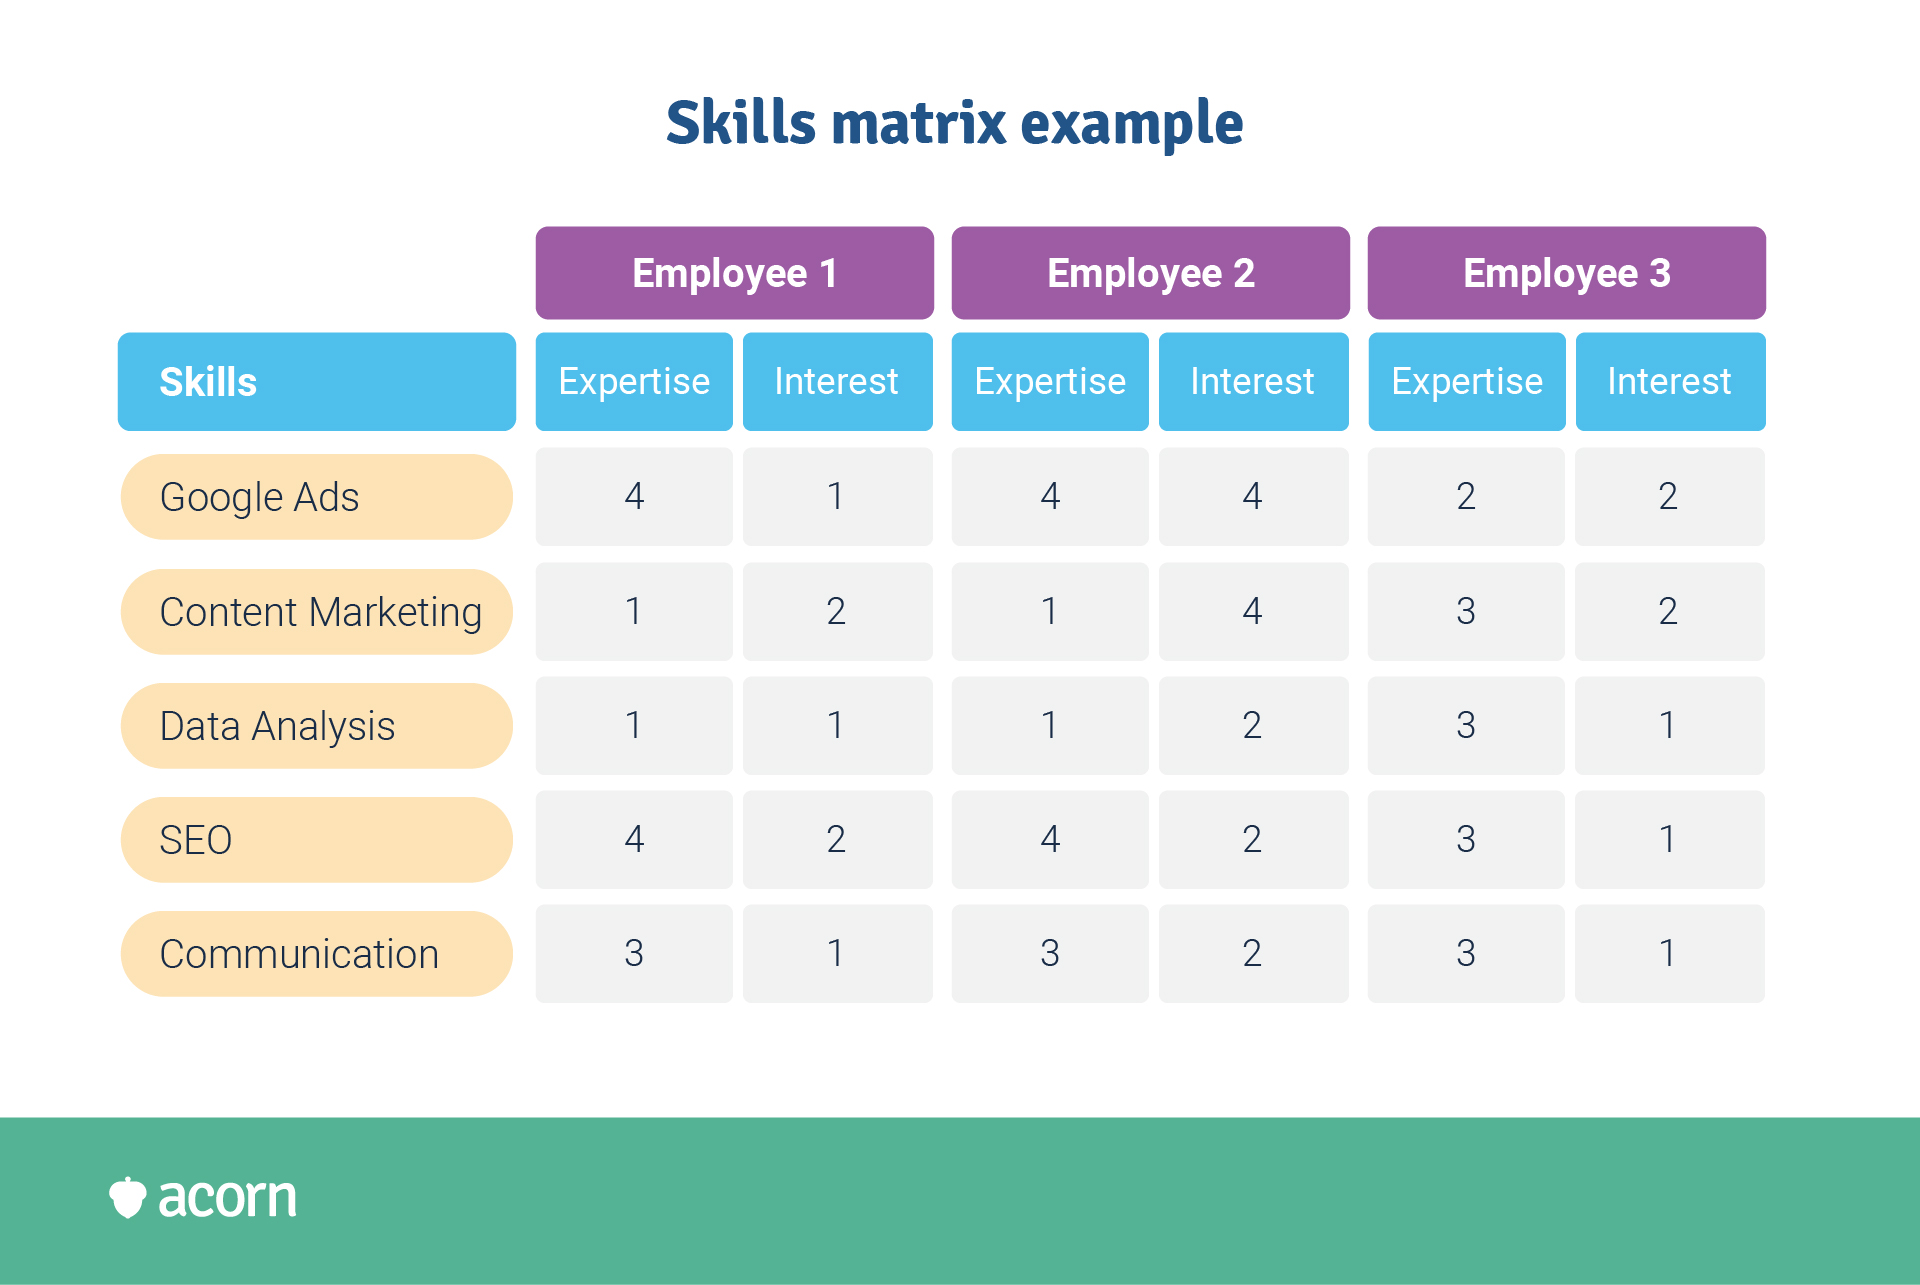 Skills matrix example